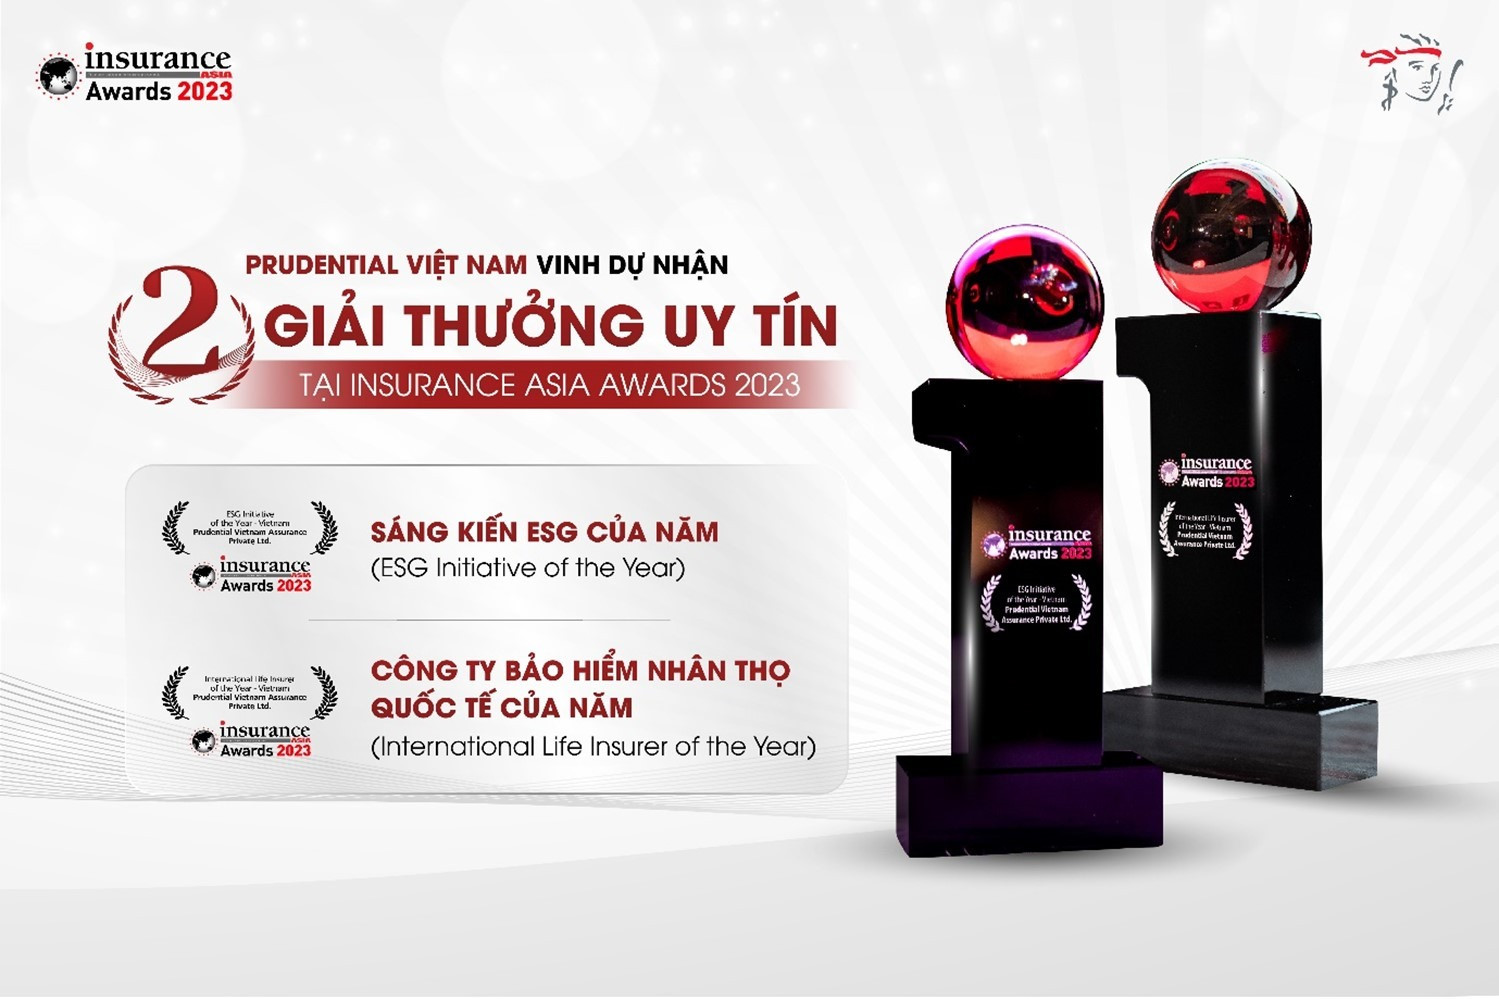 Prudential Việt Nam giành giải thưởng kép tại Insurance Asia Awards 2023.